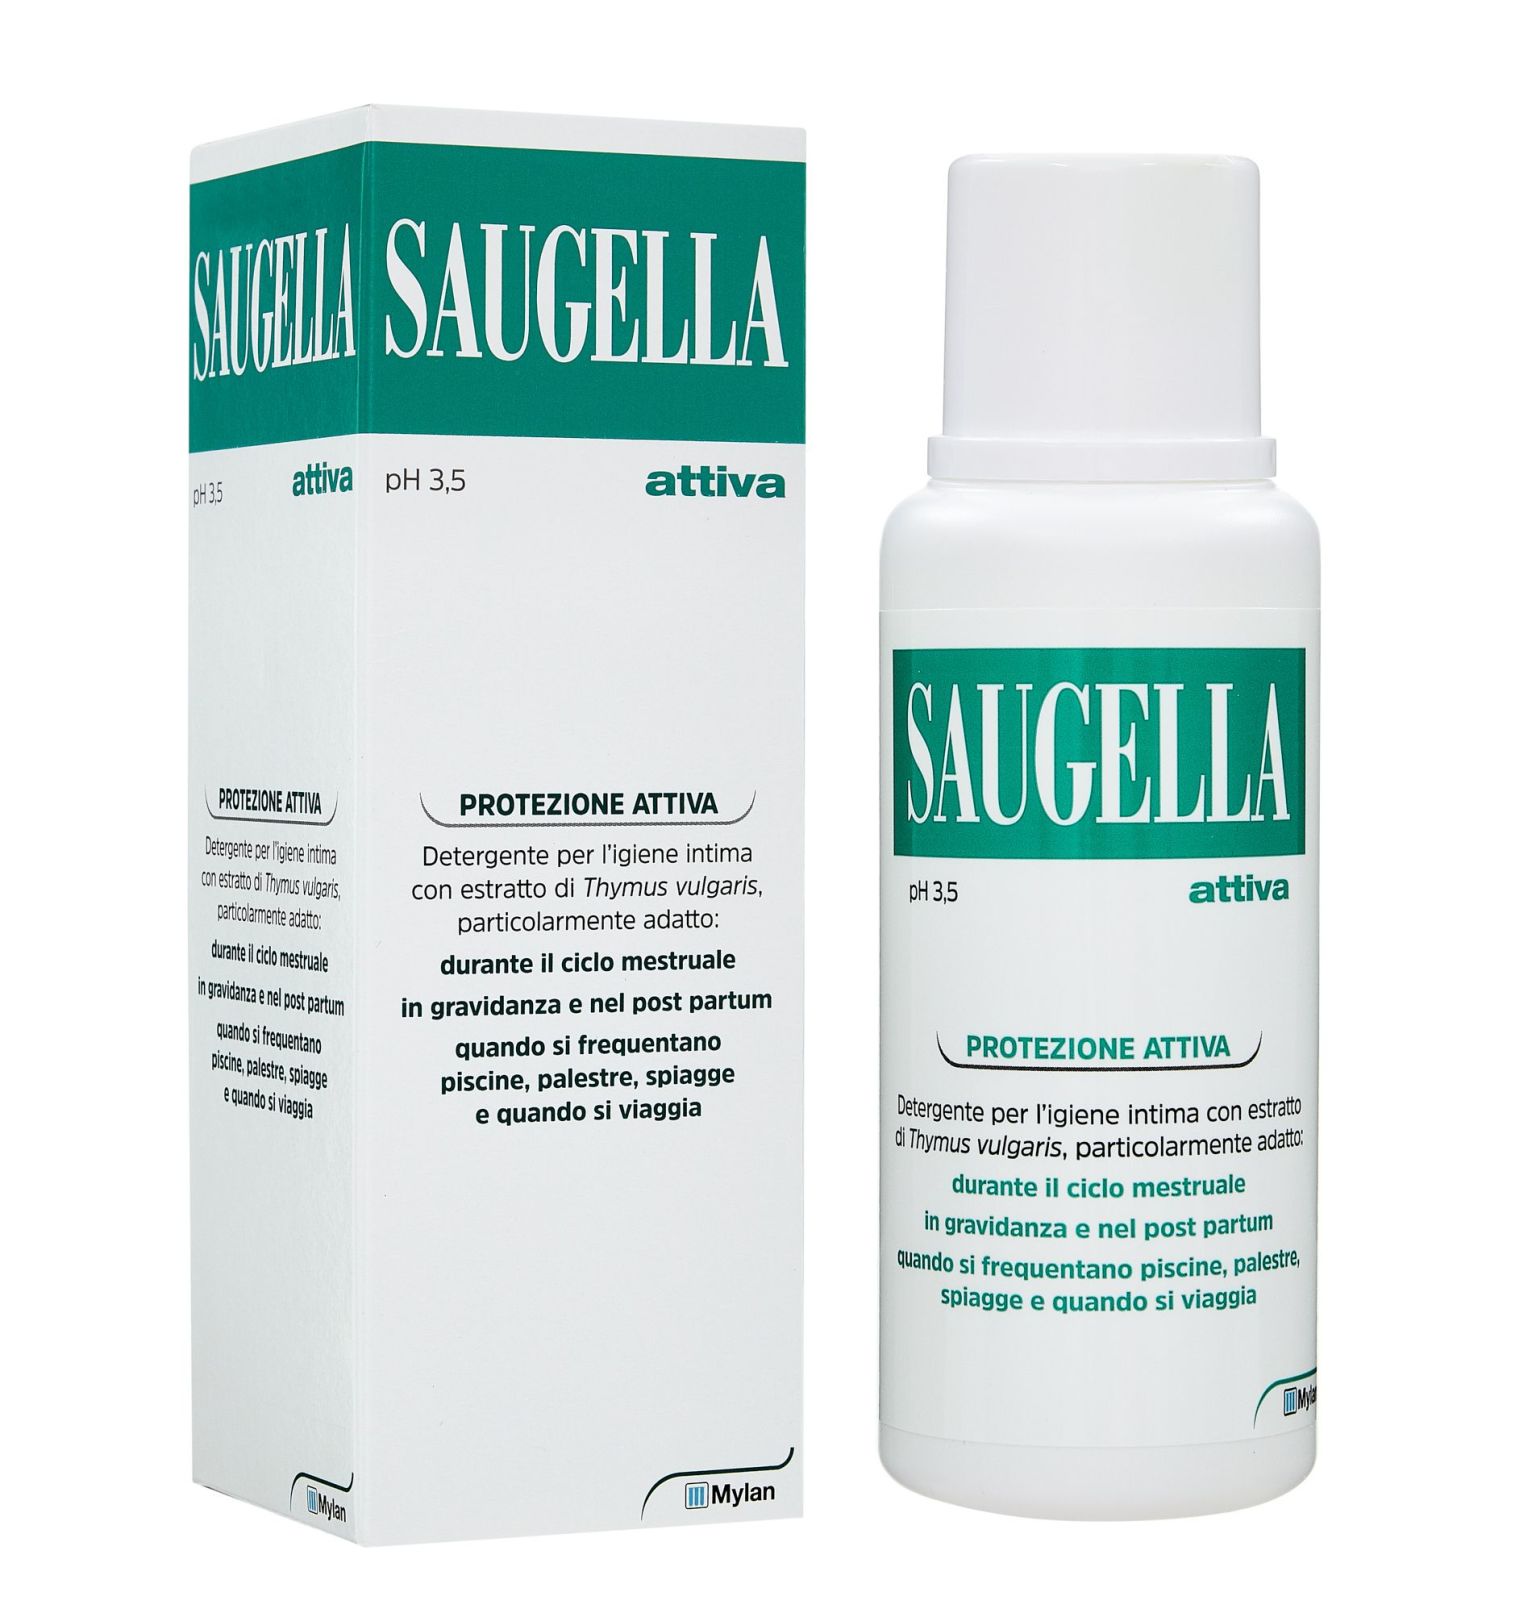 908961422 - Saugella Protezione Attiva Detergente Intimo a base di Thymus Vulgaris 250ml - 7873577_2.jpg